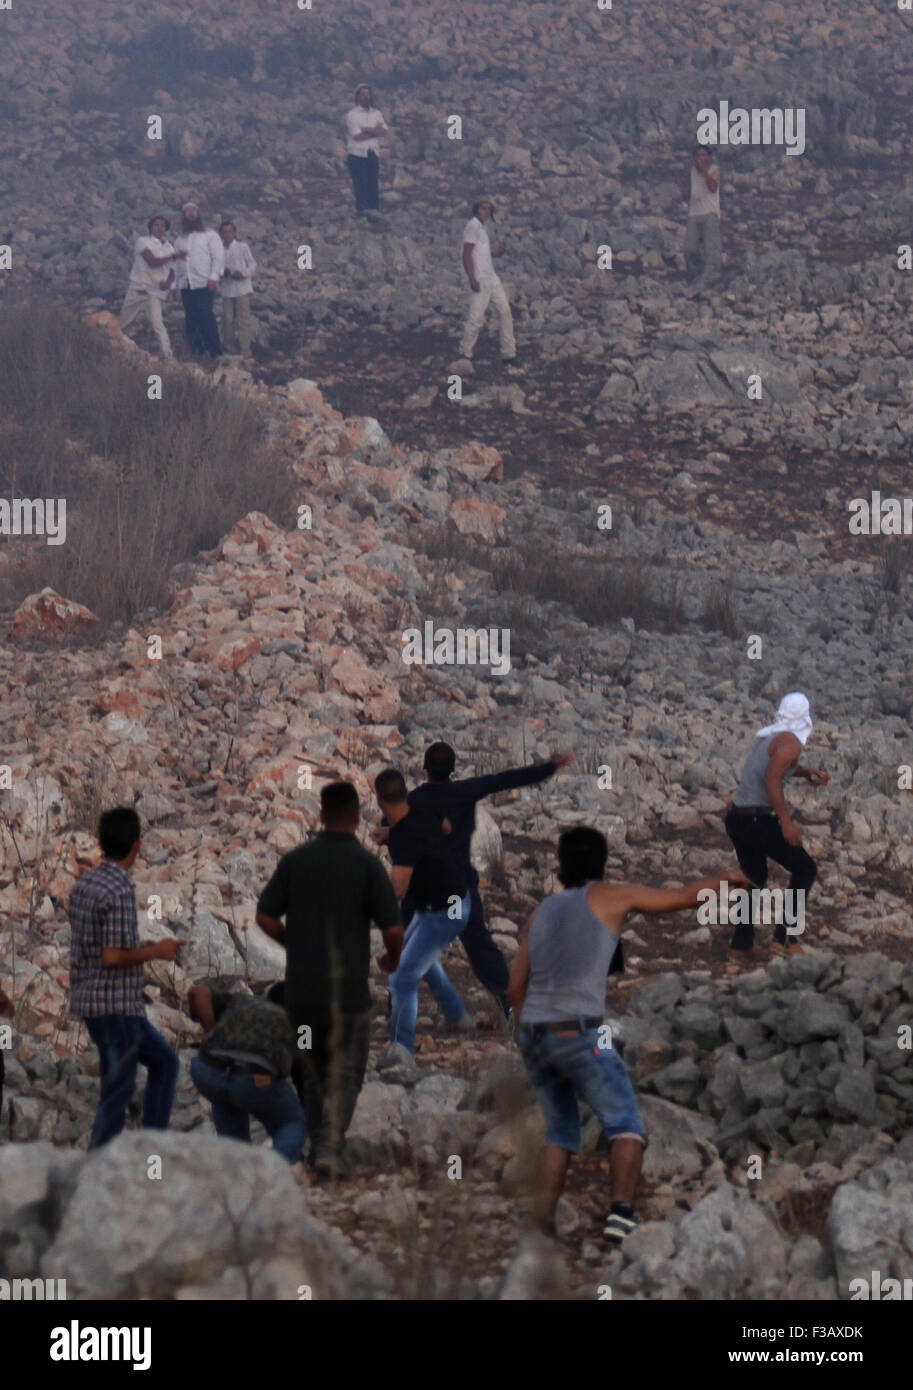 Nablus, Nablus. 3 Oct, 2015. Los palestinos arrojan piedras contra los colonos israelíes durante los enfrentamientos ocurridos en la aldea de la Ribera Occidental de Burin, cerca de Naplusa, el 3 de octubre de 2015. Esporádicos enfrentamientos entre palestinos y una docena de colonos del asentamiento de Yitzhar cuando los colonos arrojaron piedras a los palestinos que han respondido de la misma manera. © Nidal Eshtayeh/Xinhua/Alamy Live News Foto de stock